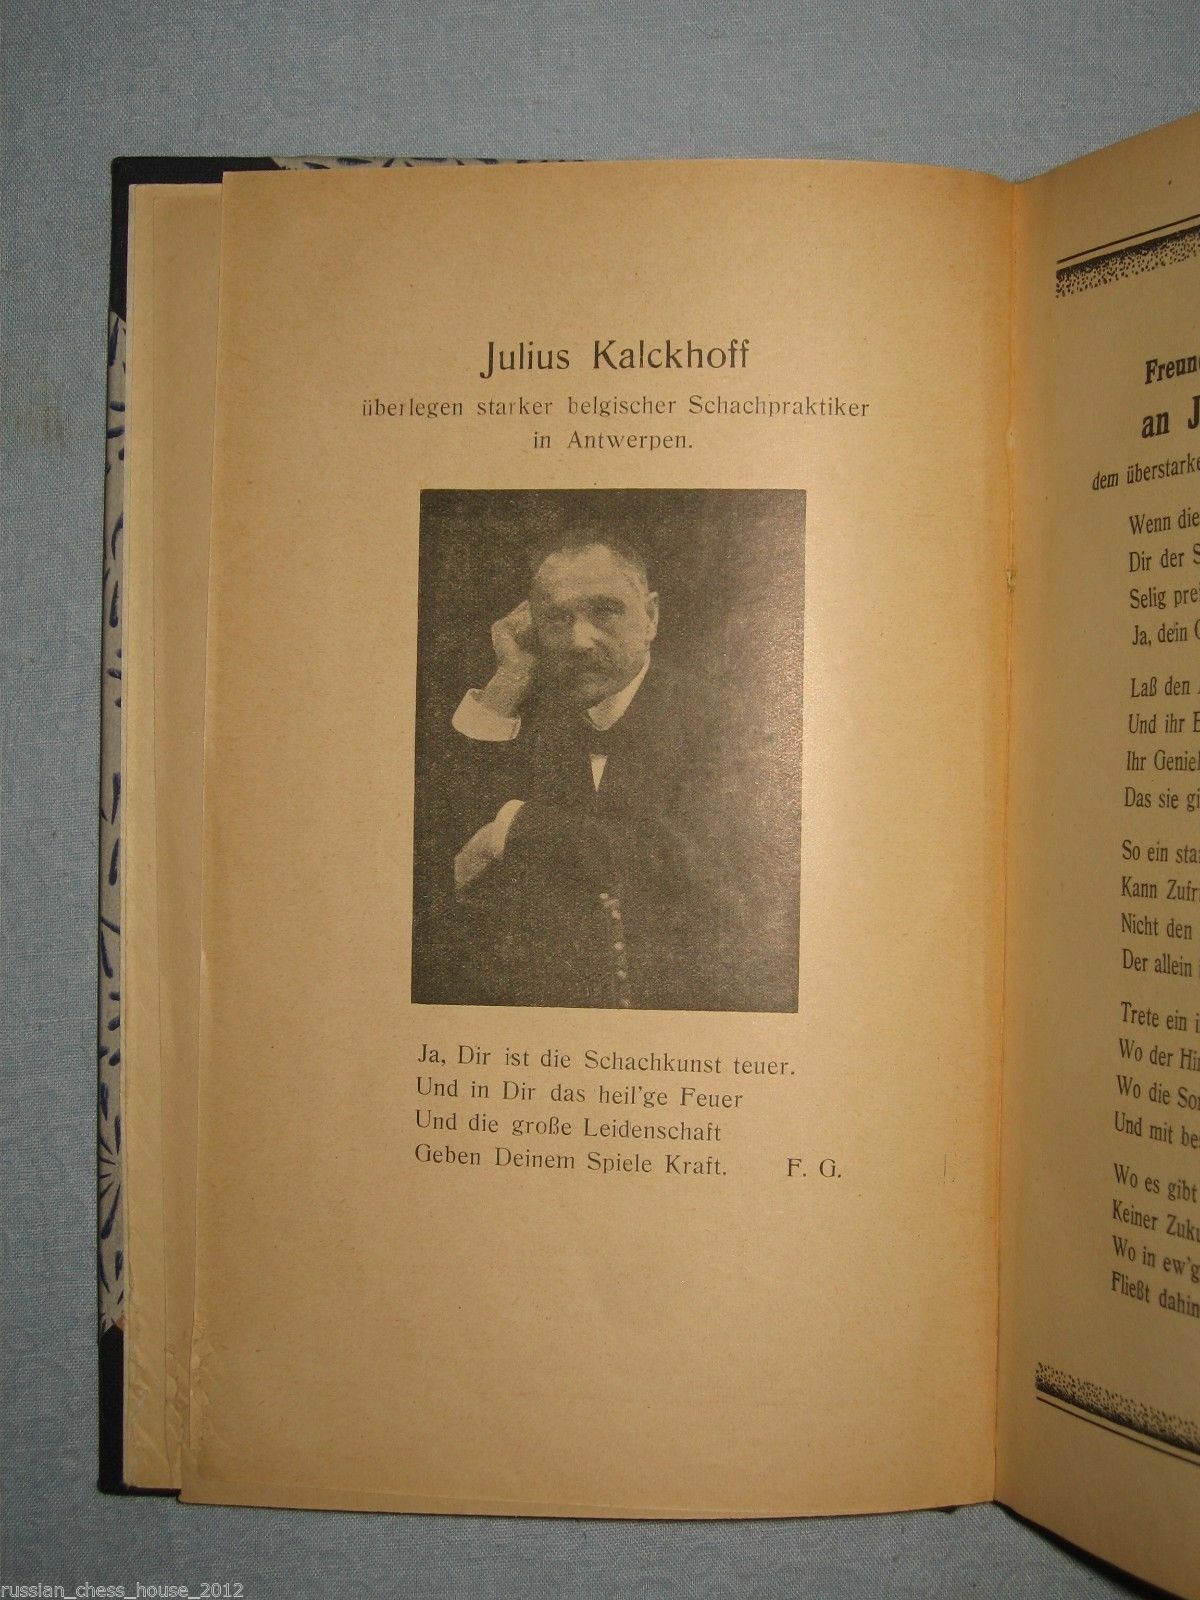 10816.Antique German Chess Book: Gutmayer F.Die Geheimnisse der Kombinationskunst.1922